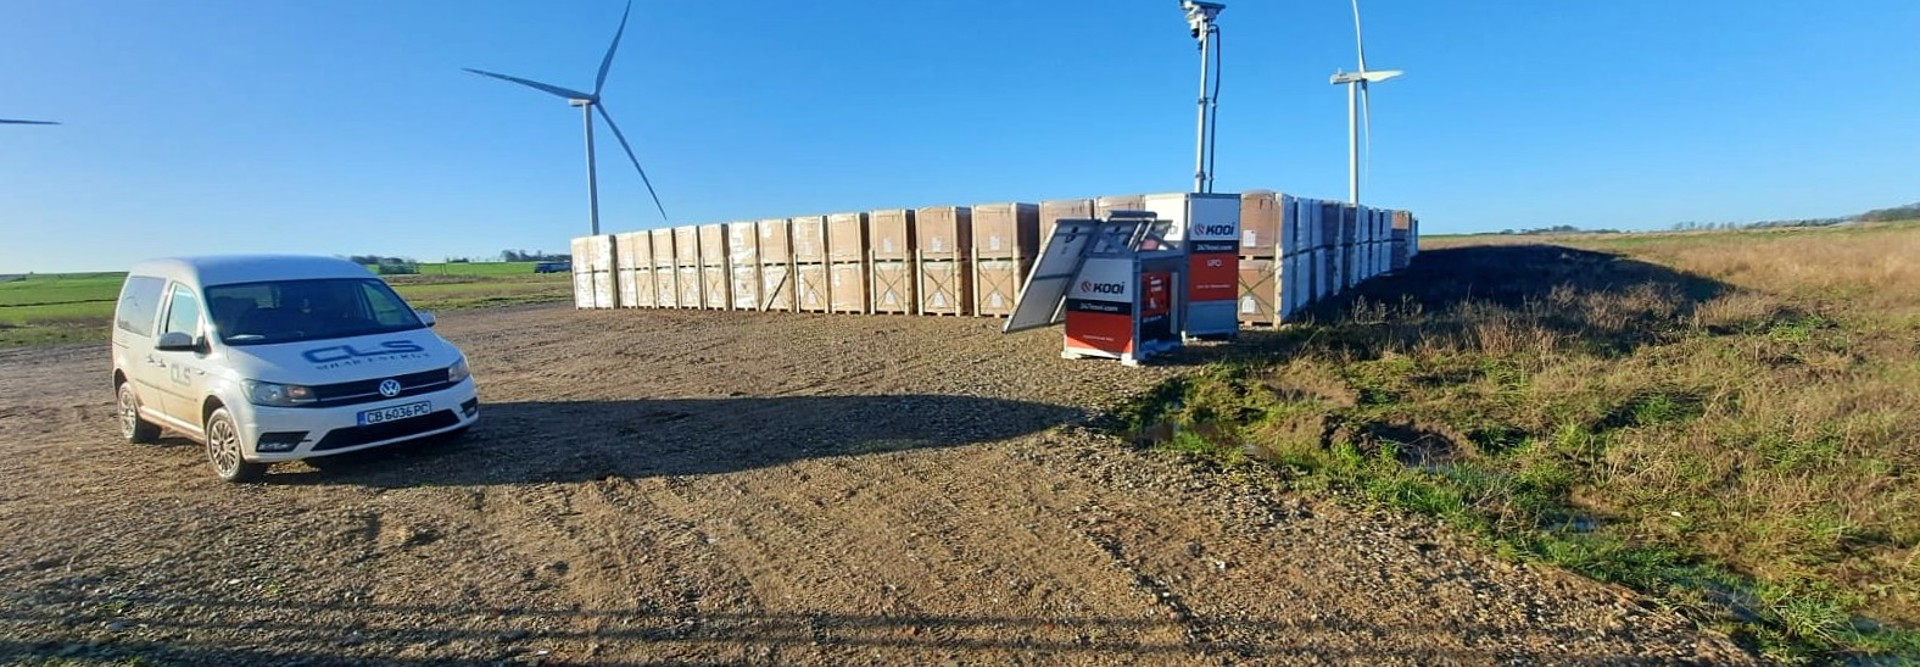 Projects of Solarpro in Kjellerup en Skive secure with Kooi UFO’s (1)